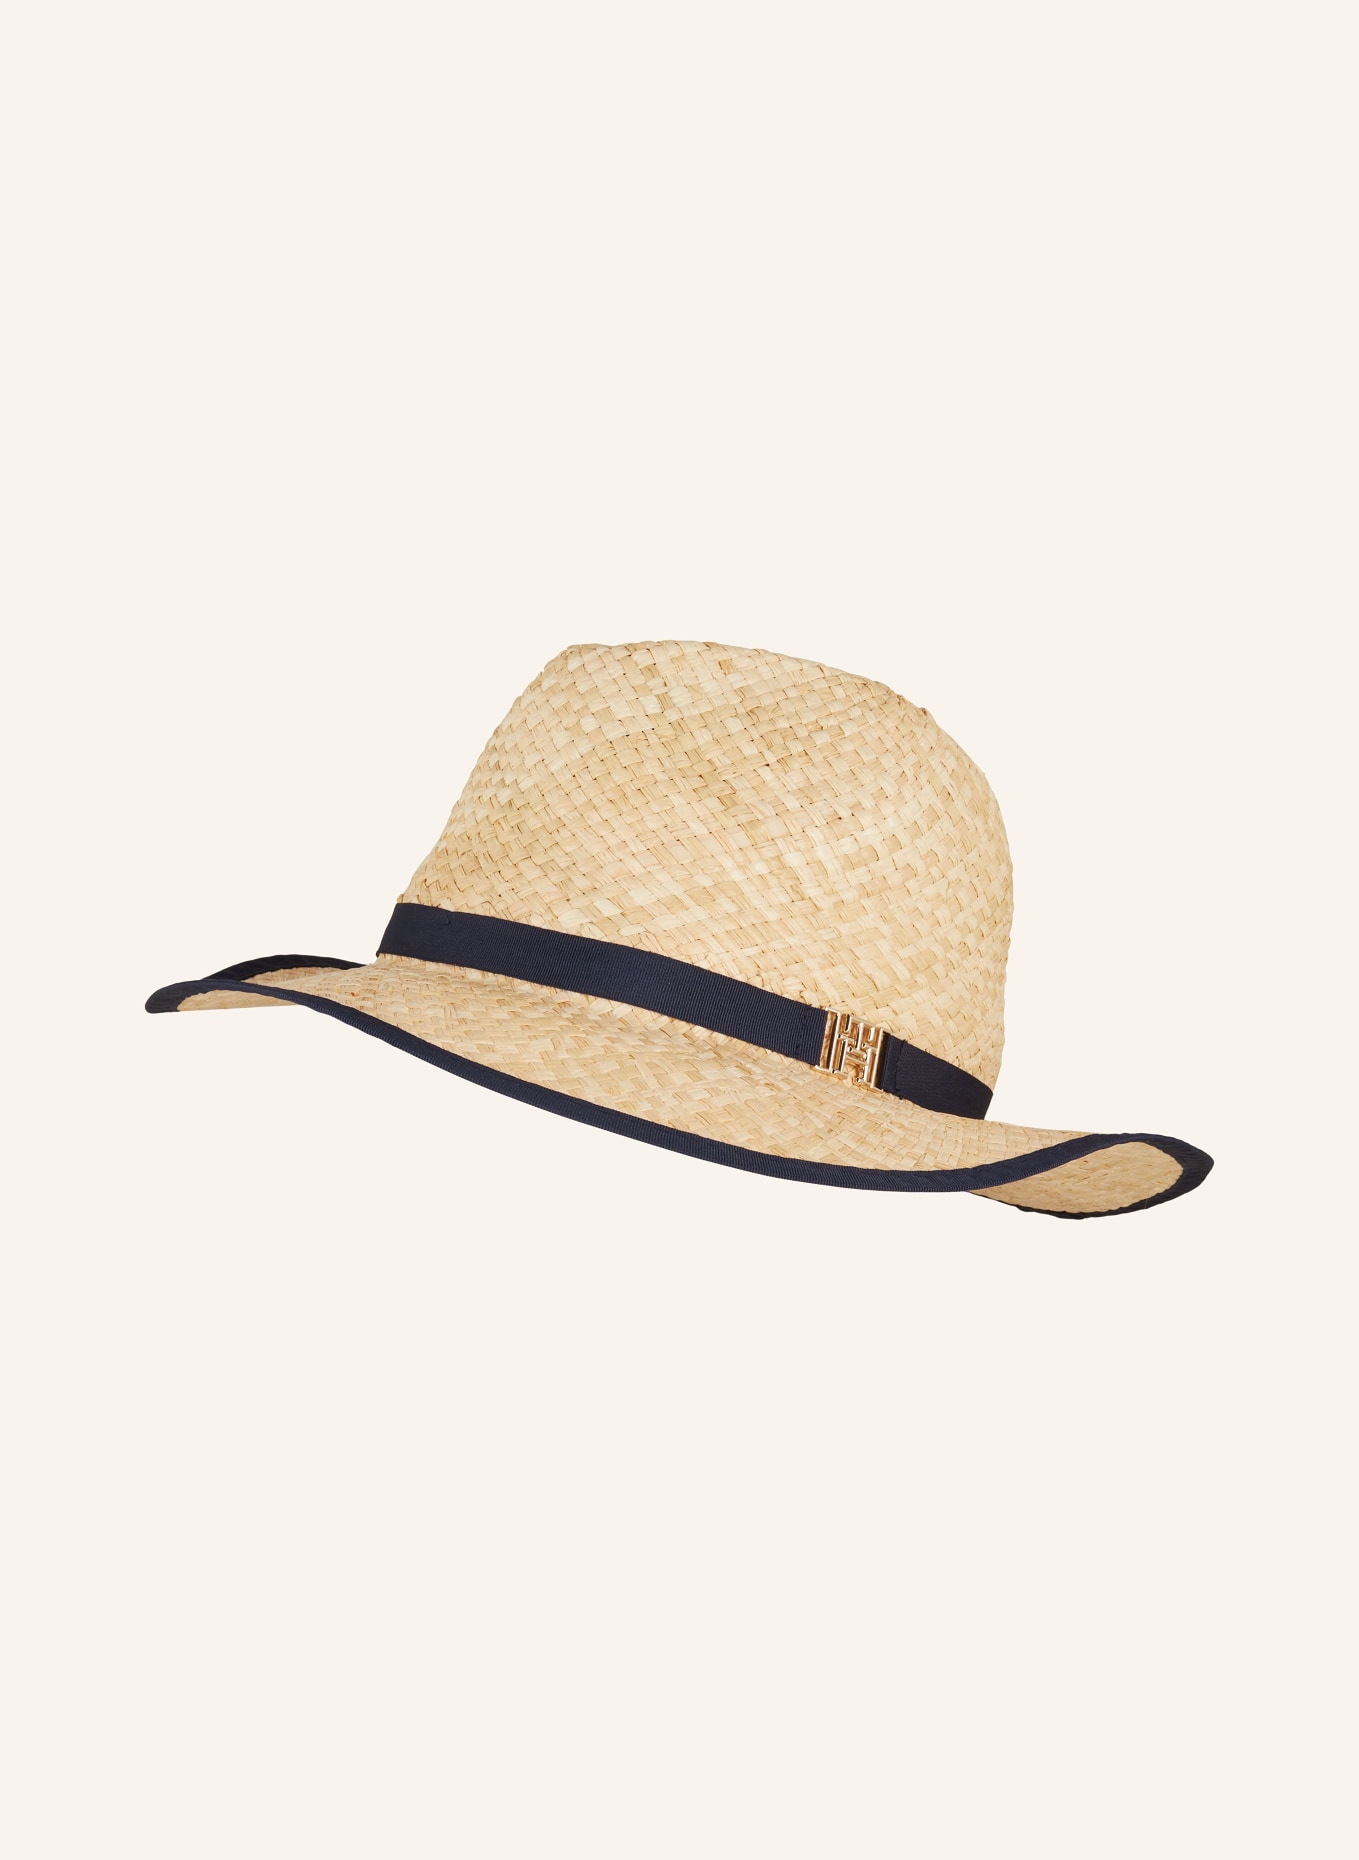 TOMMY HILFIGER Straw hat, Color: LIGHT BROWN/ DARK BLUE (Image 1)